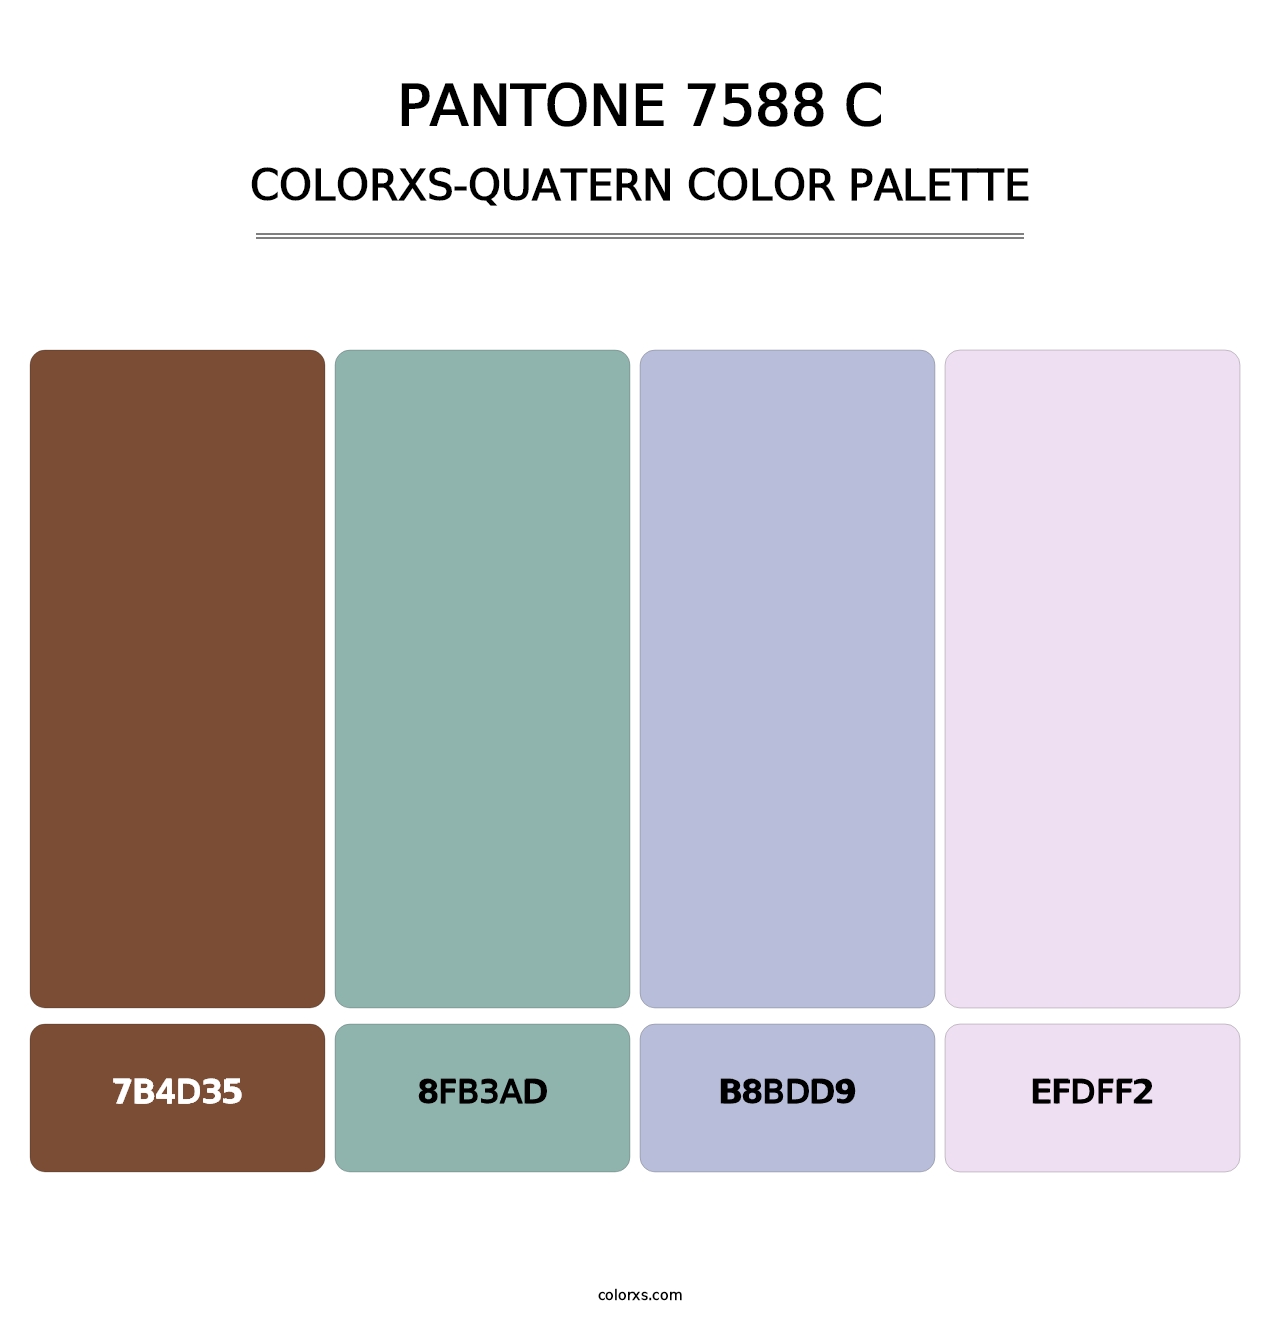 PANTONE 7588 C - Colorxs Quatern Palette